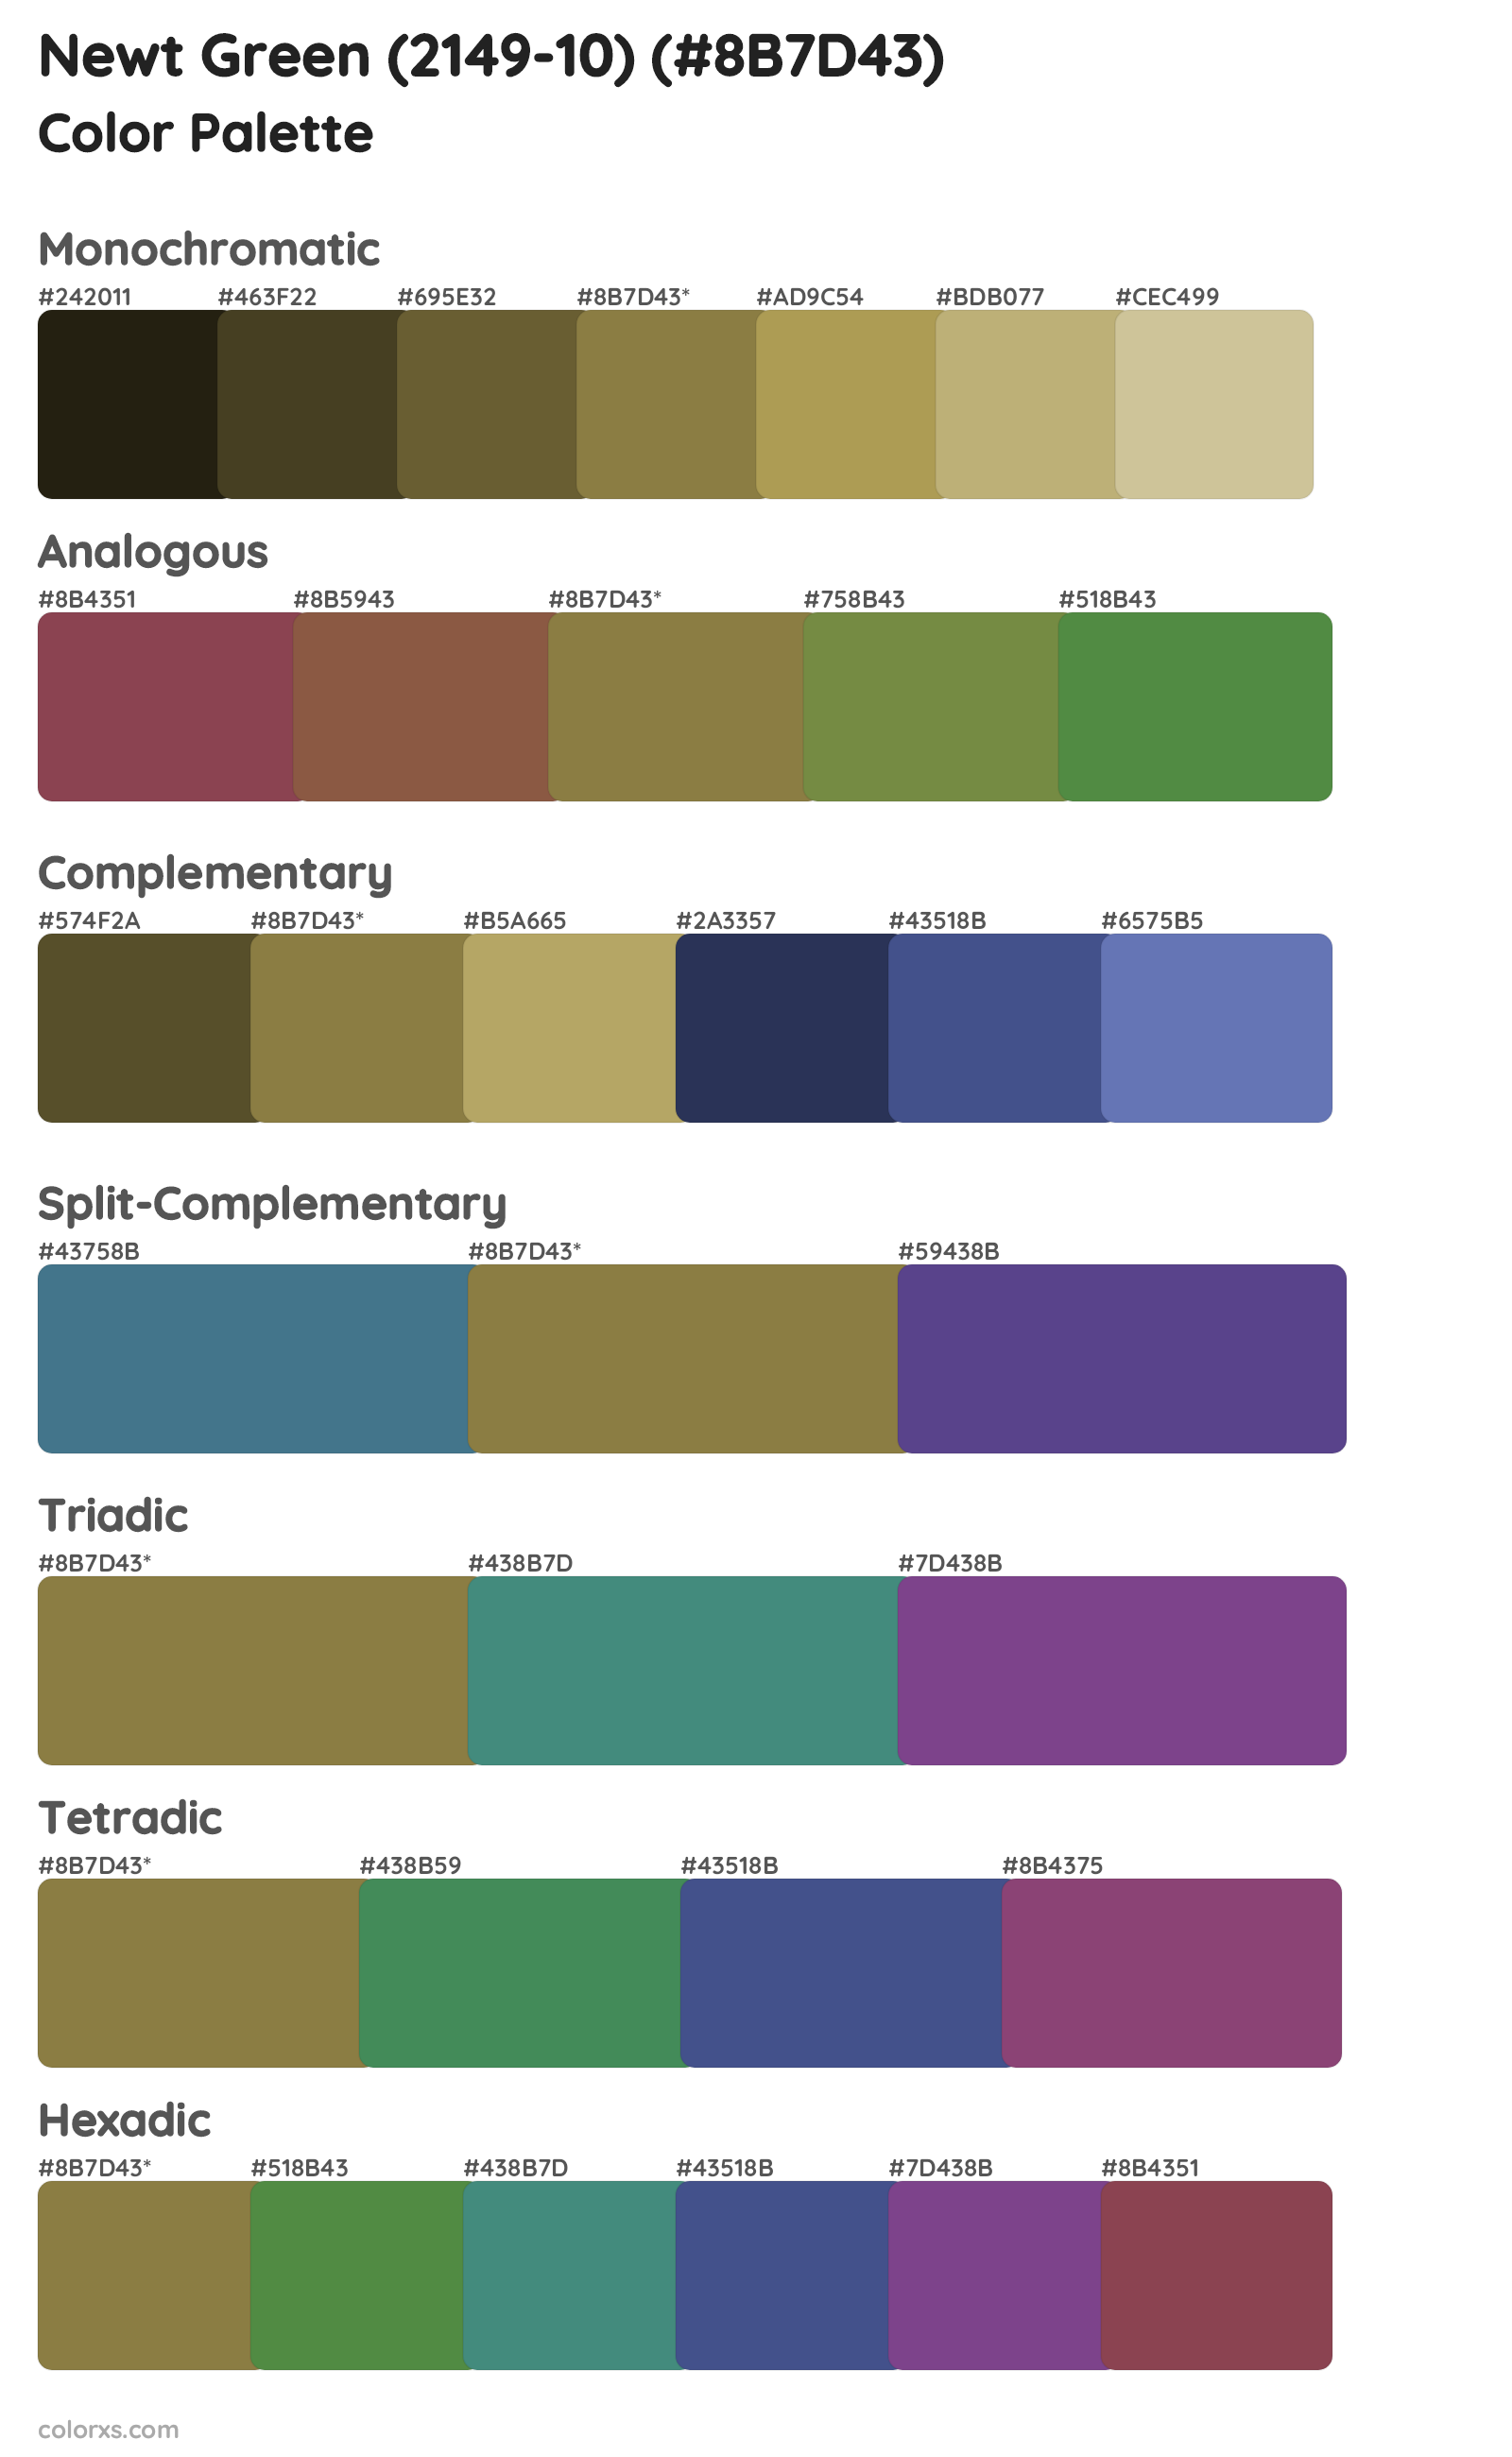 Newt Green (2149-10) Color Scheme Palettes